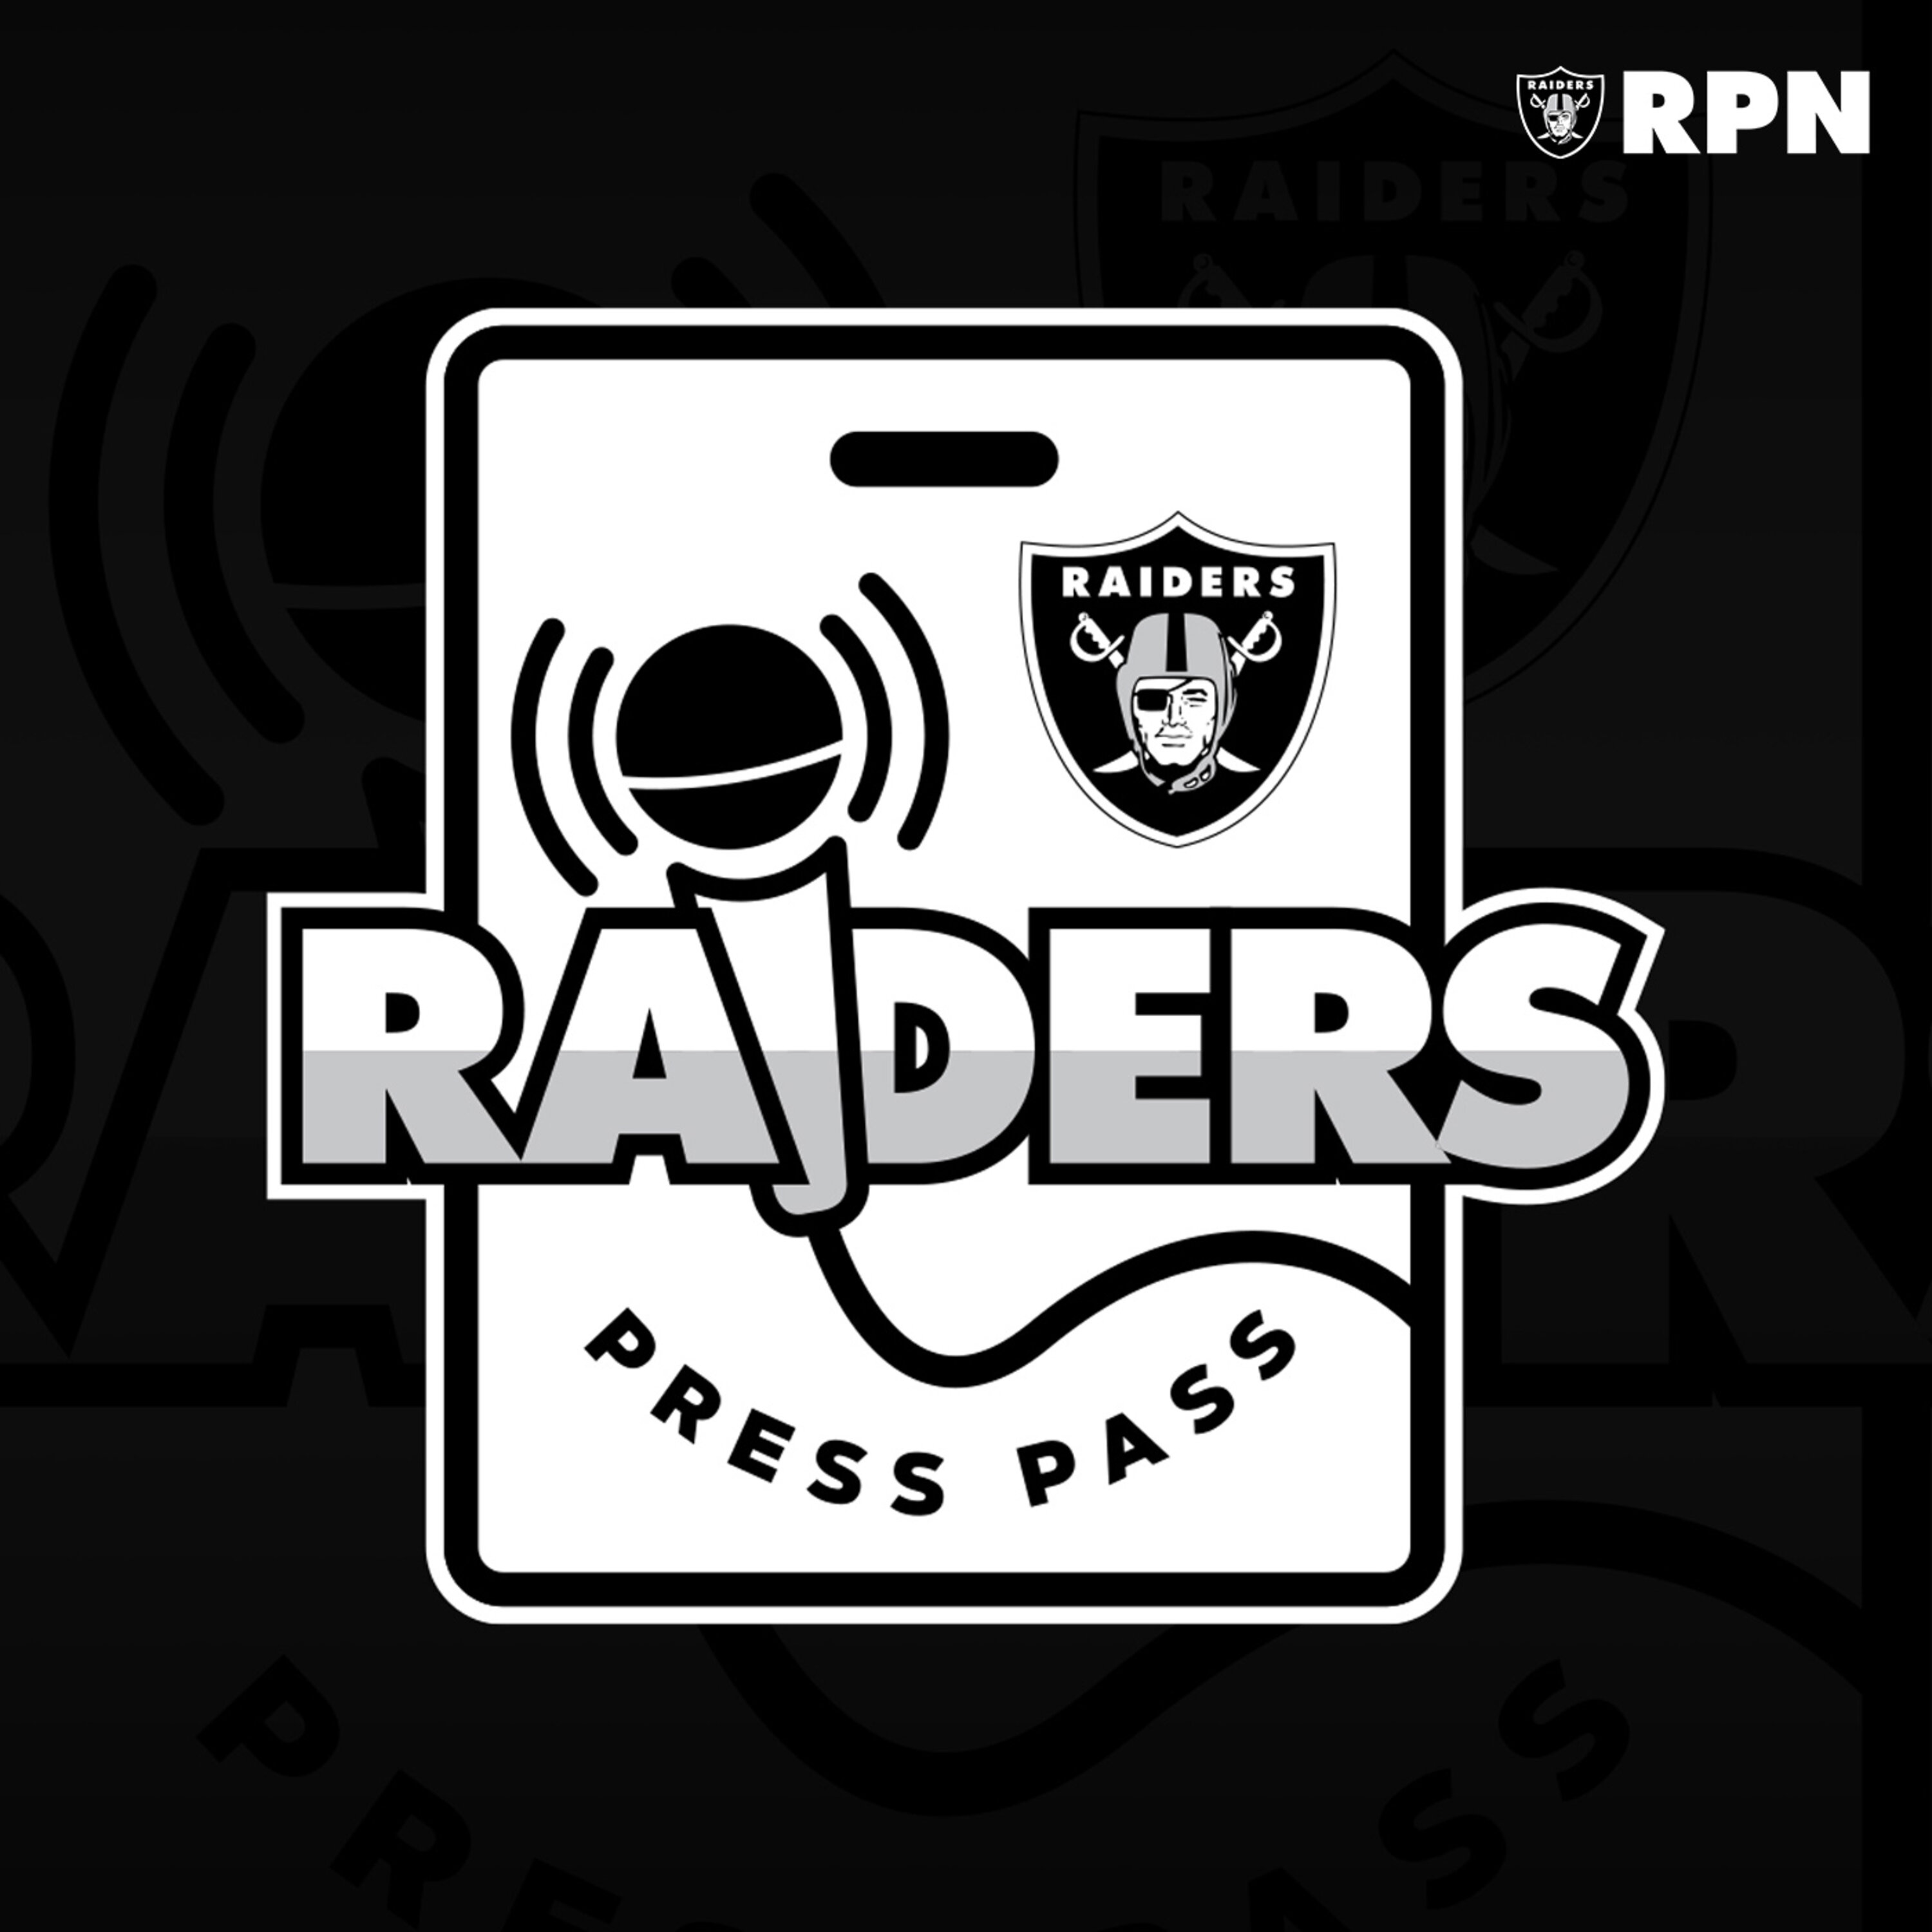 Raiders Press Pass